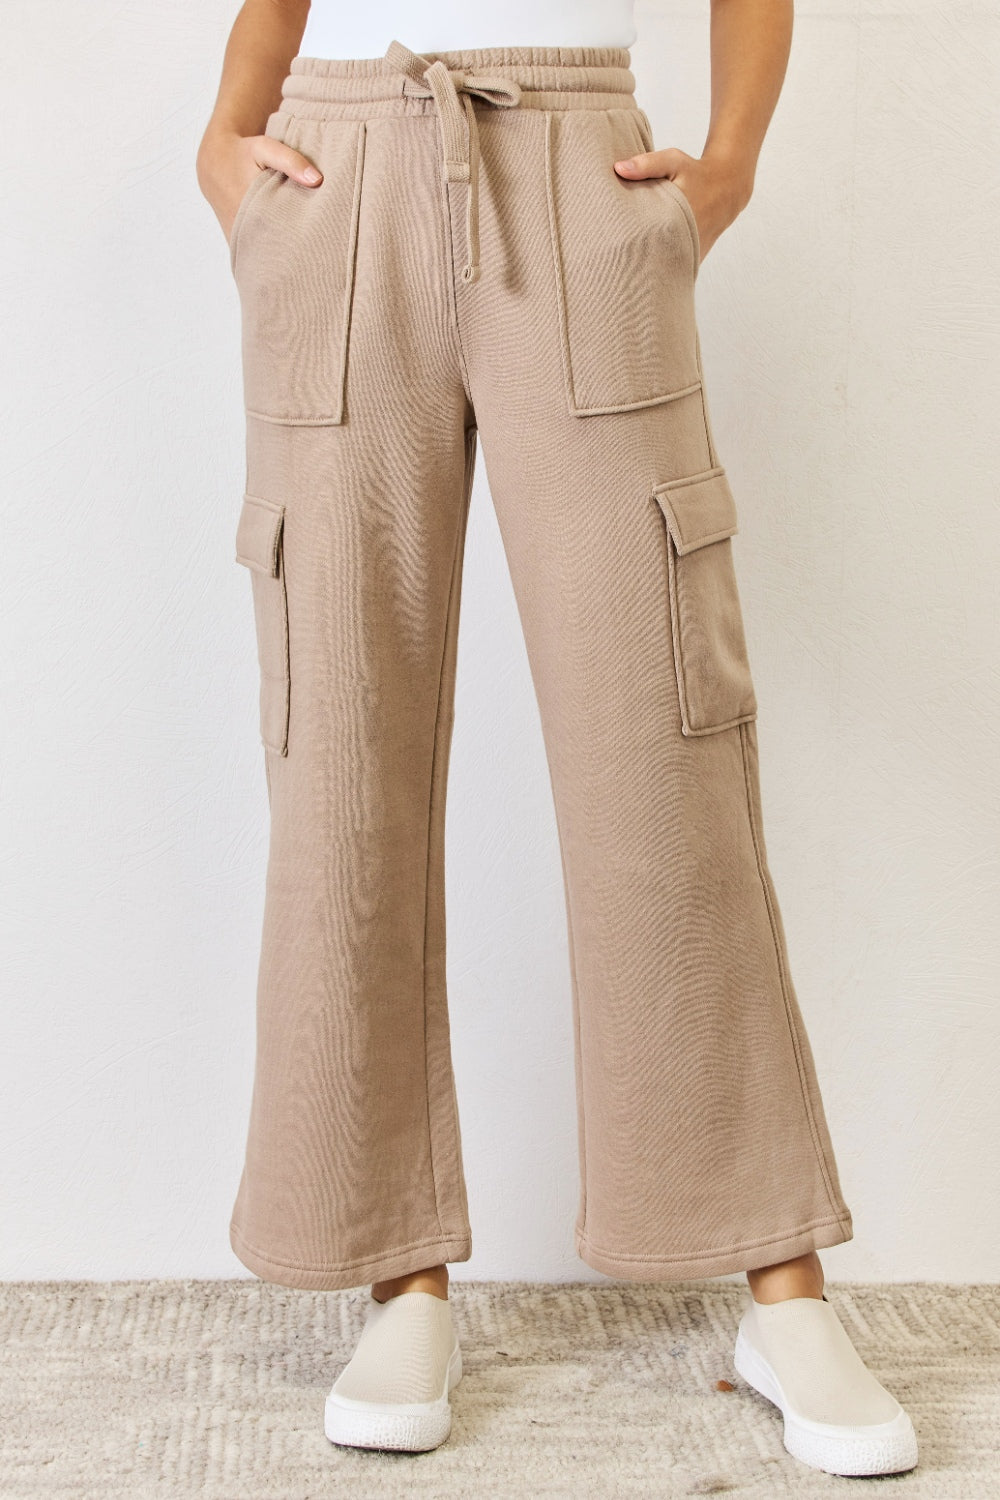 Women's Tan Beige Drawstring Sweatpants Wide Leg Flare Cargo Pockets